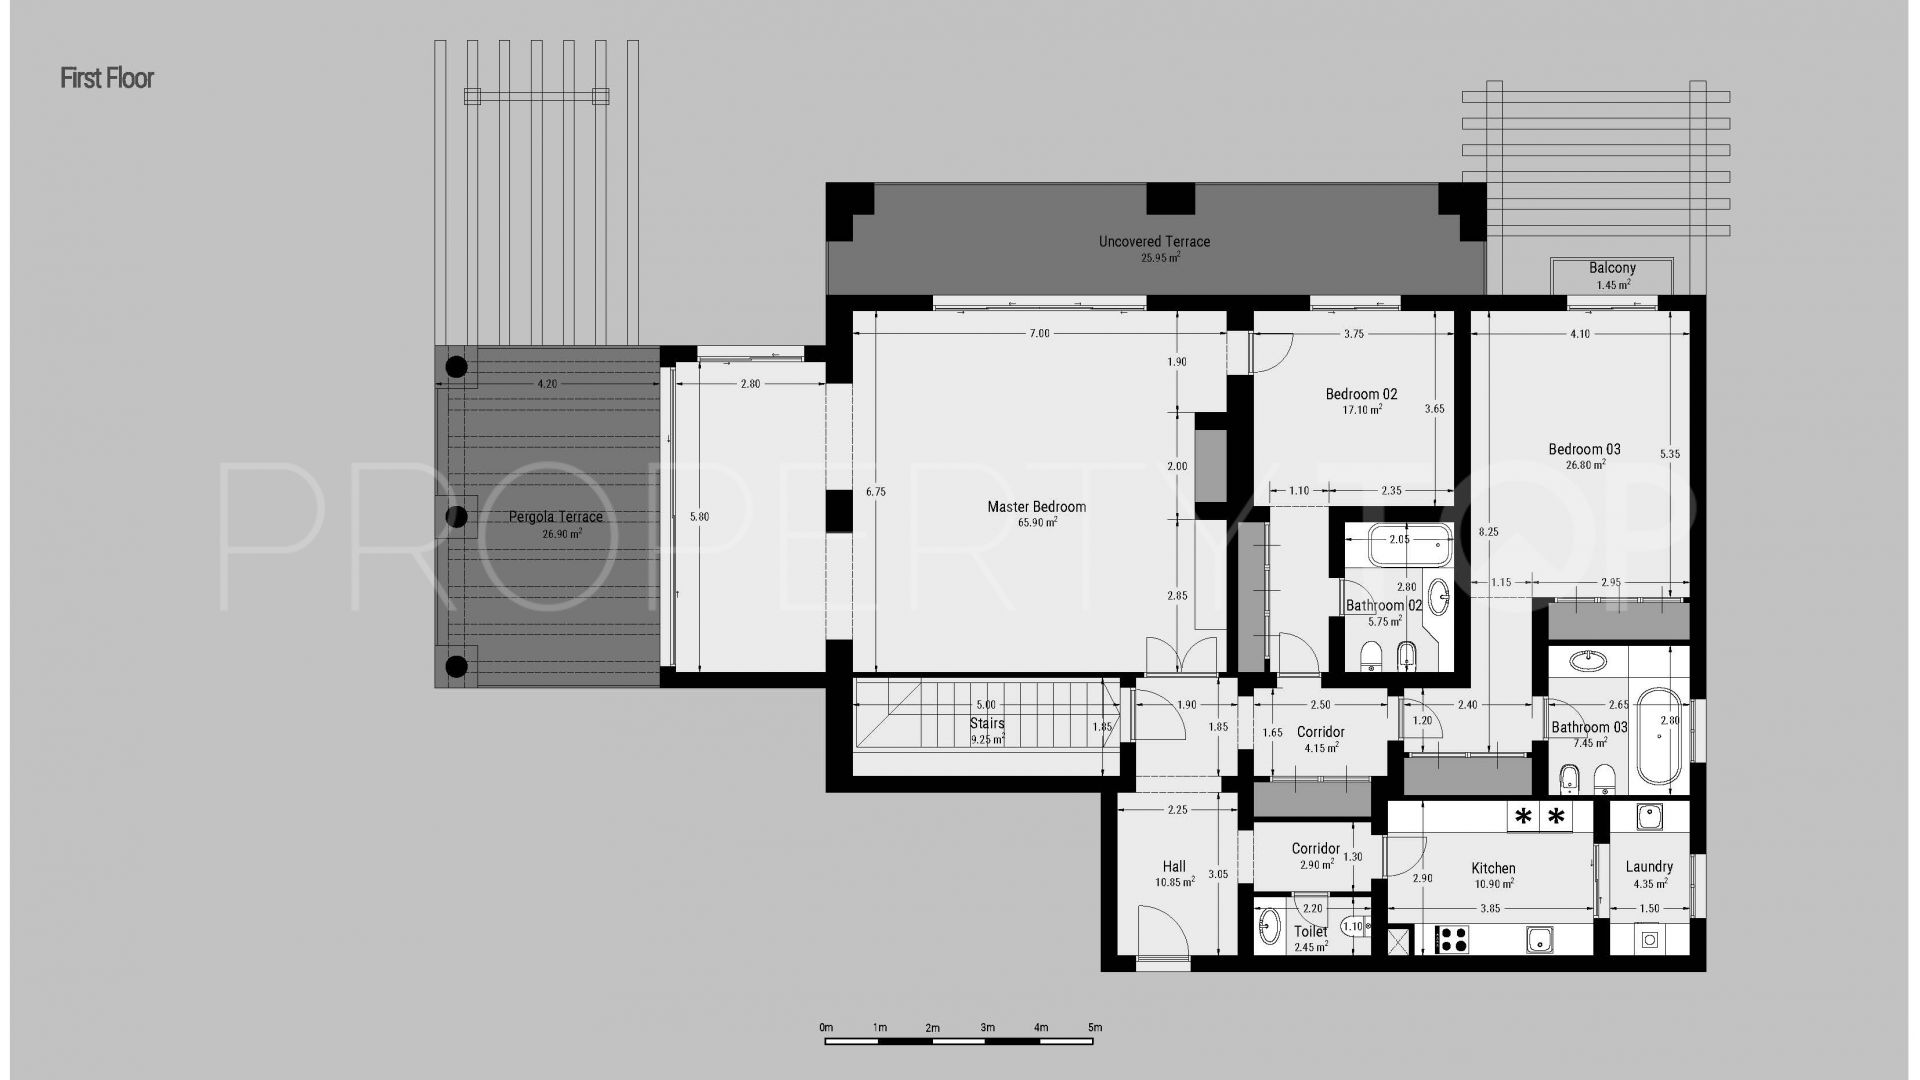 5 bedrooms ground floor duplex in Casa Nova for sale